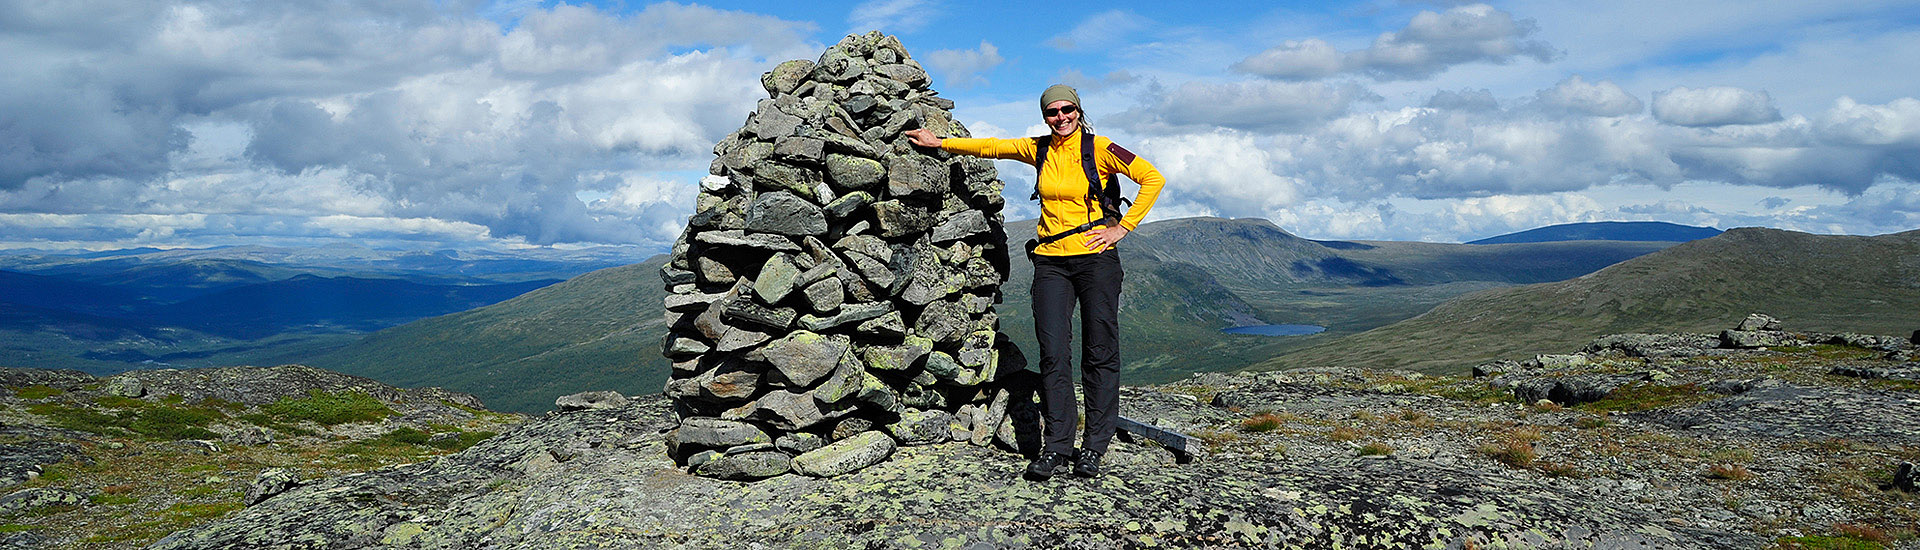 Wanderer am Steinhaufen in Jotunheimen in Norwegen